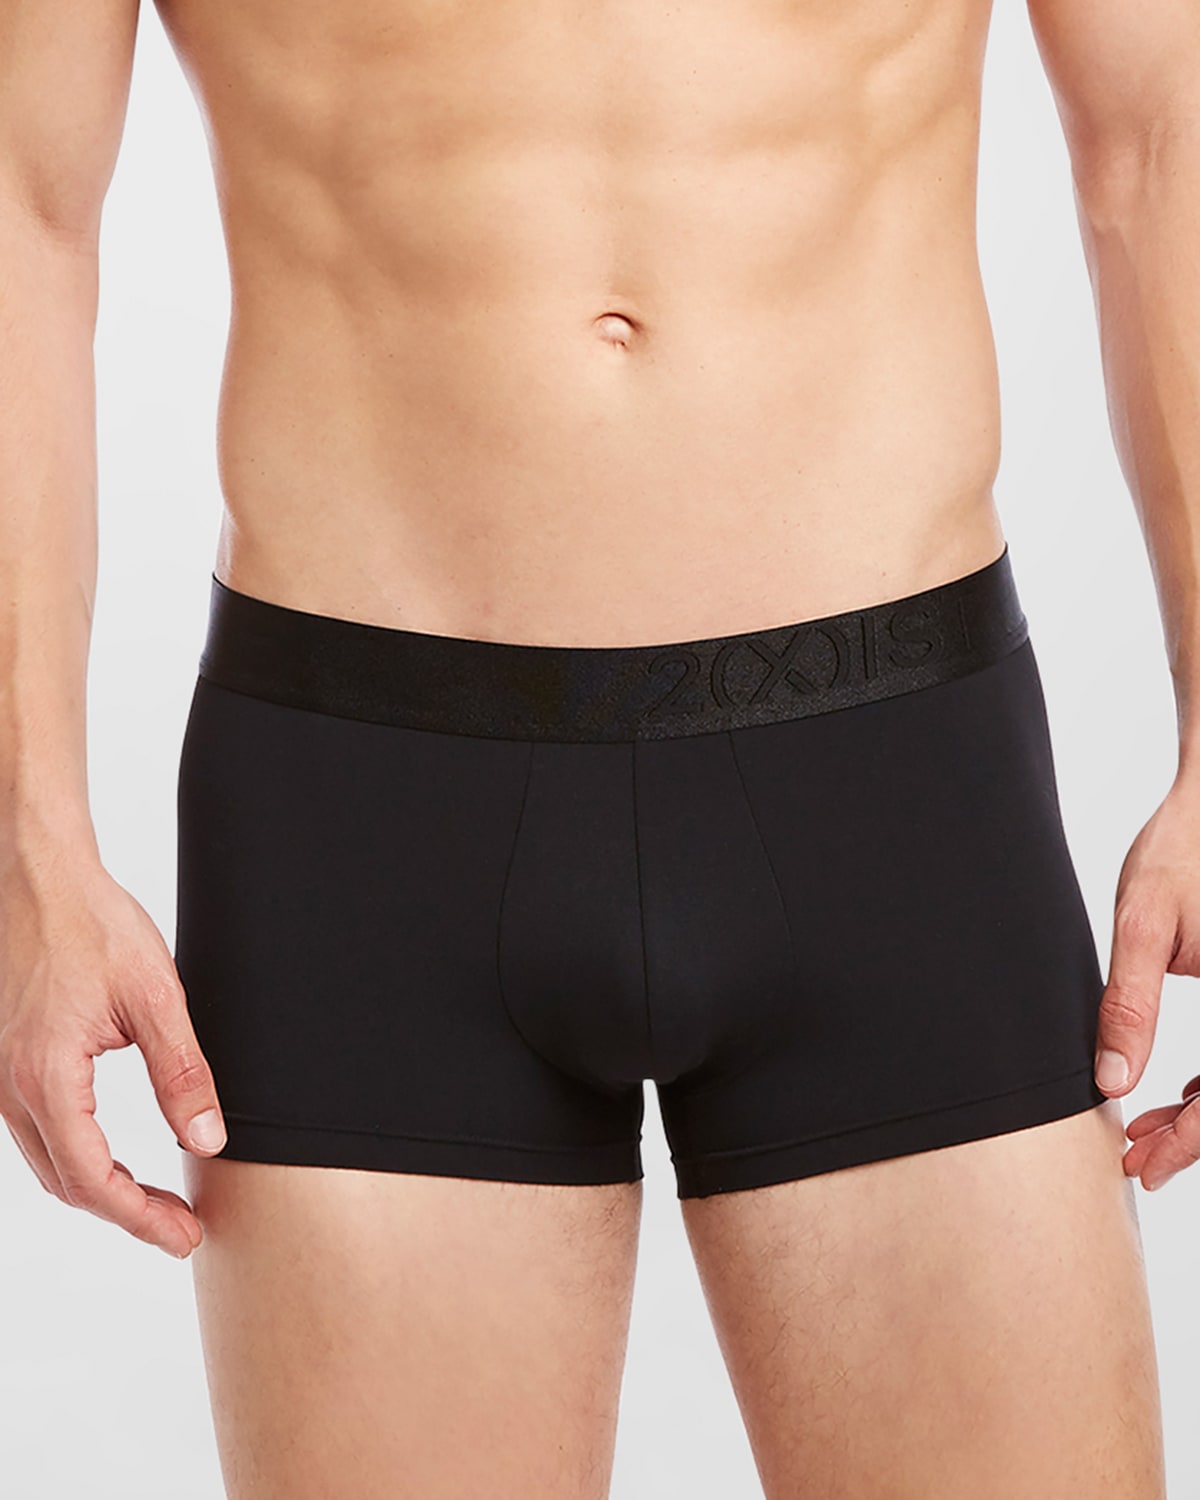 Men's Underwear, Essentials Contour Pouch Brief 3 Pack